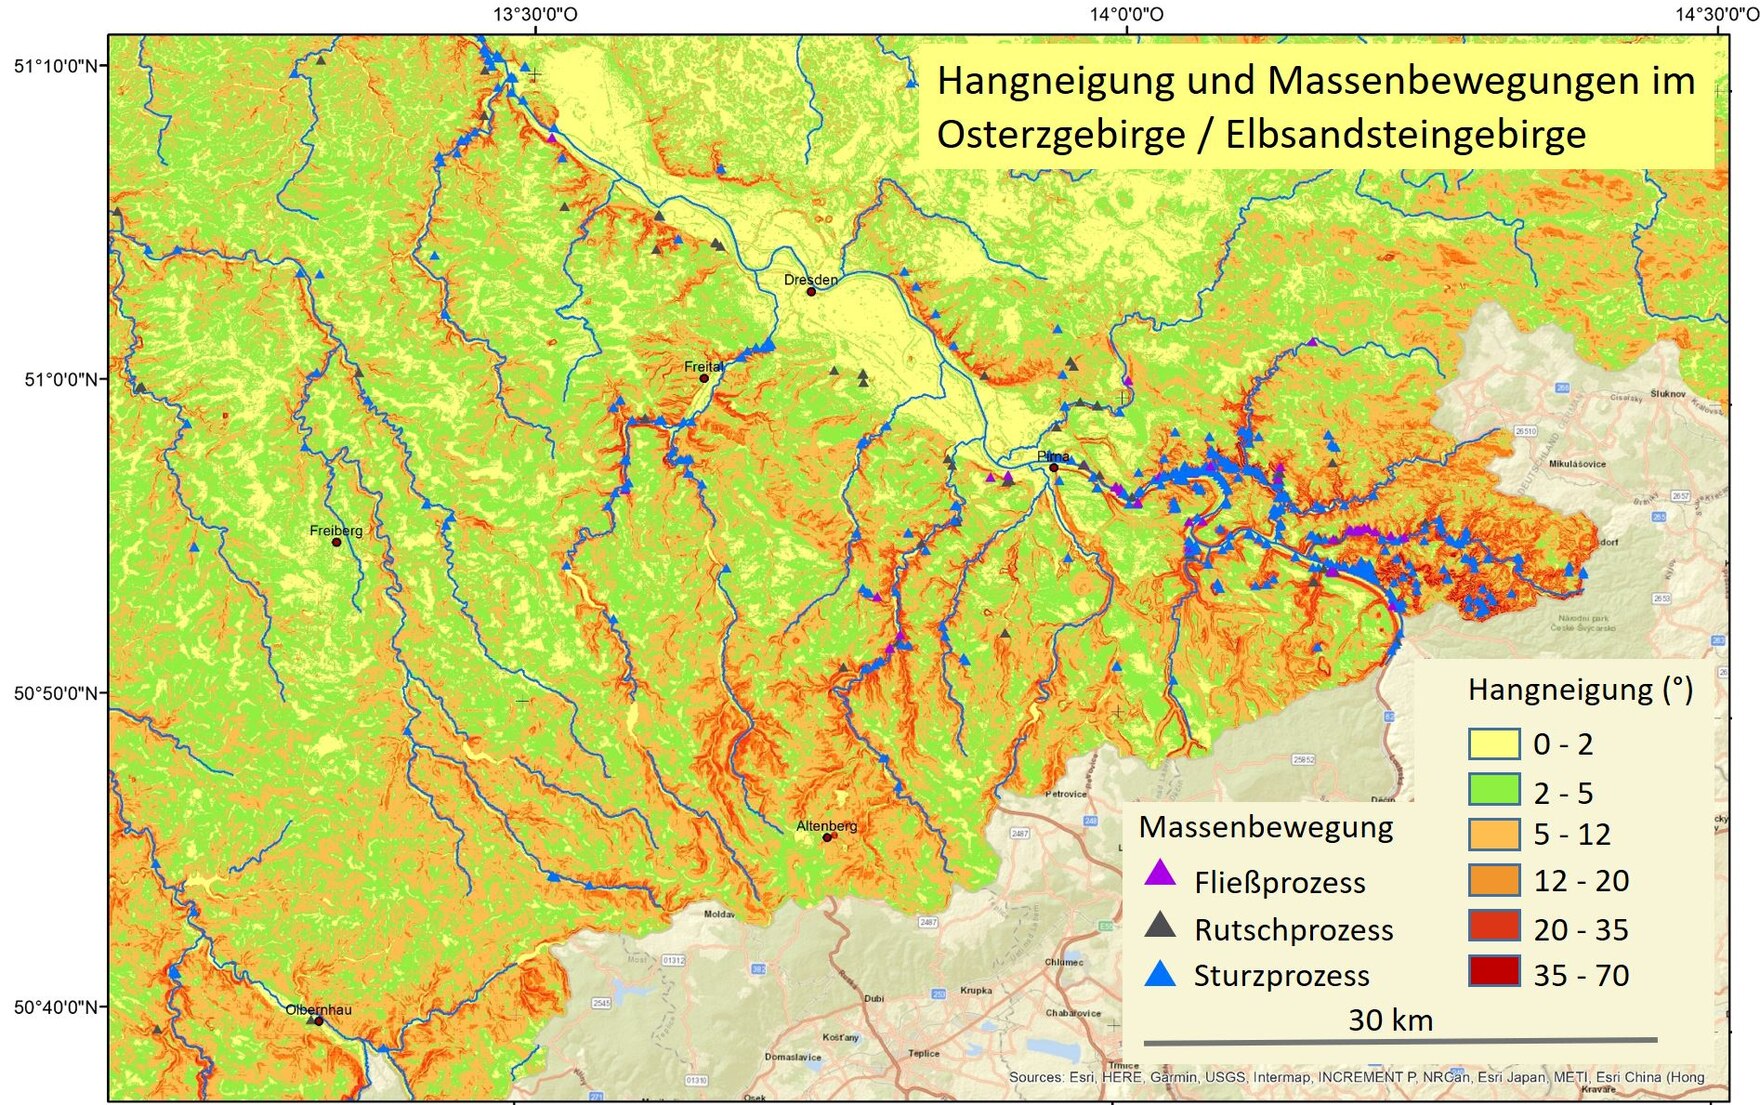 Das Bild zeigt die Karte mit Hangneigung und Massenbewegungen in Osterzgebirge und Elbsandsteingebirge.